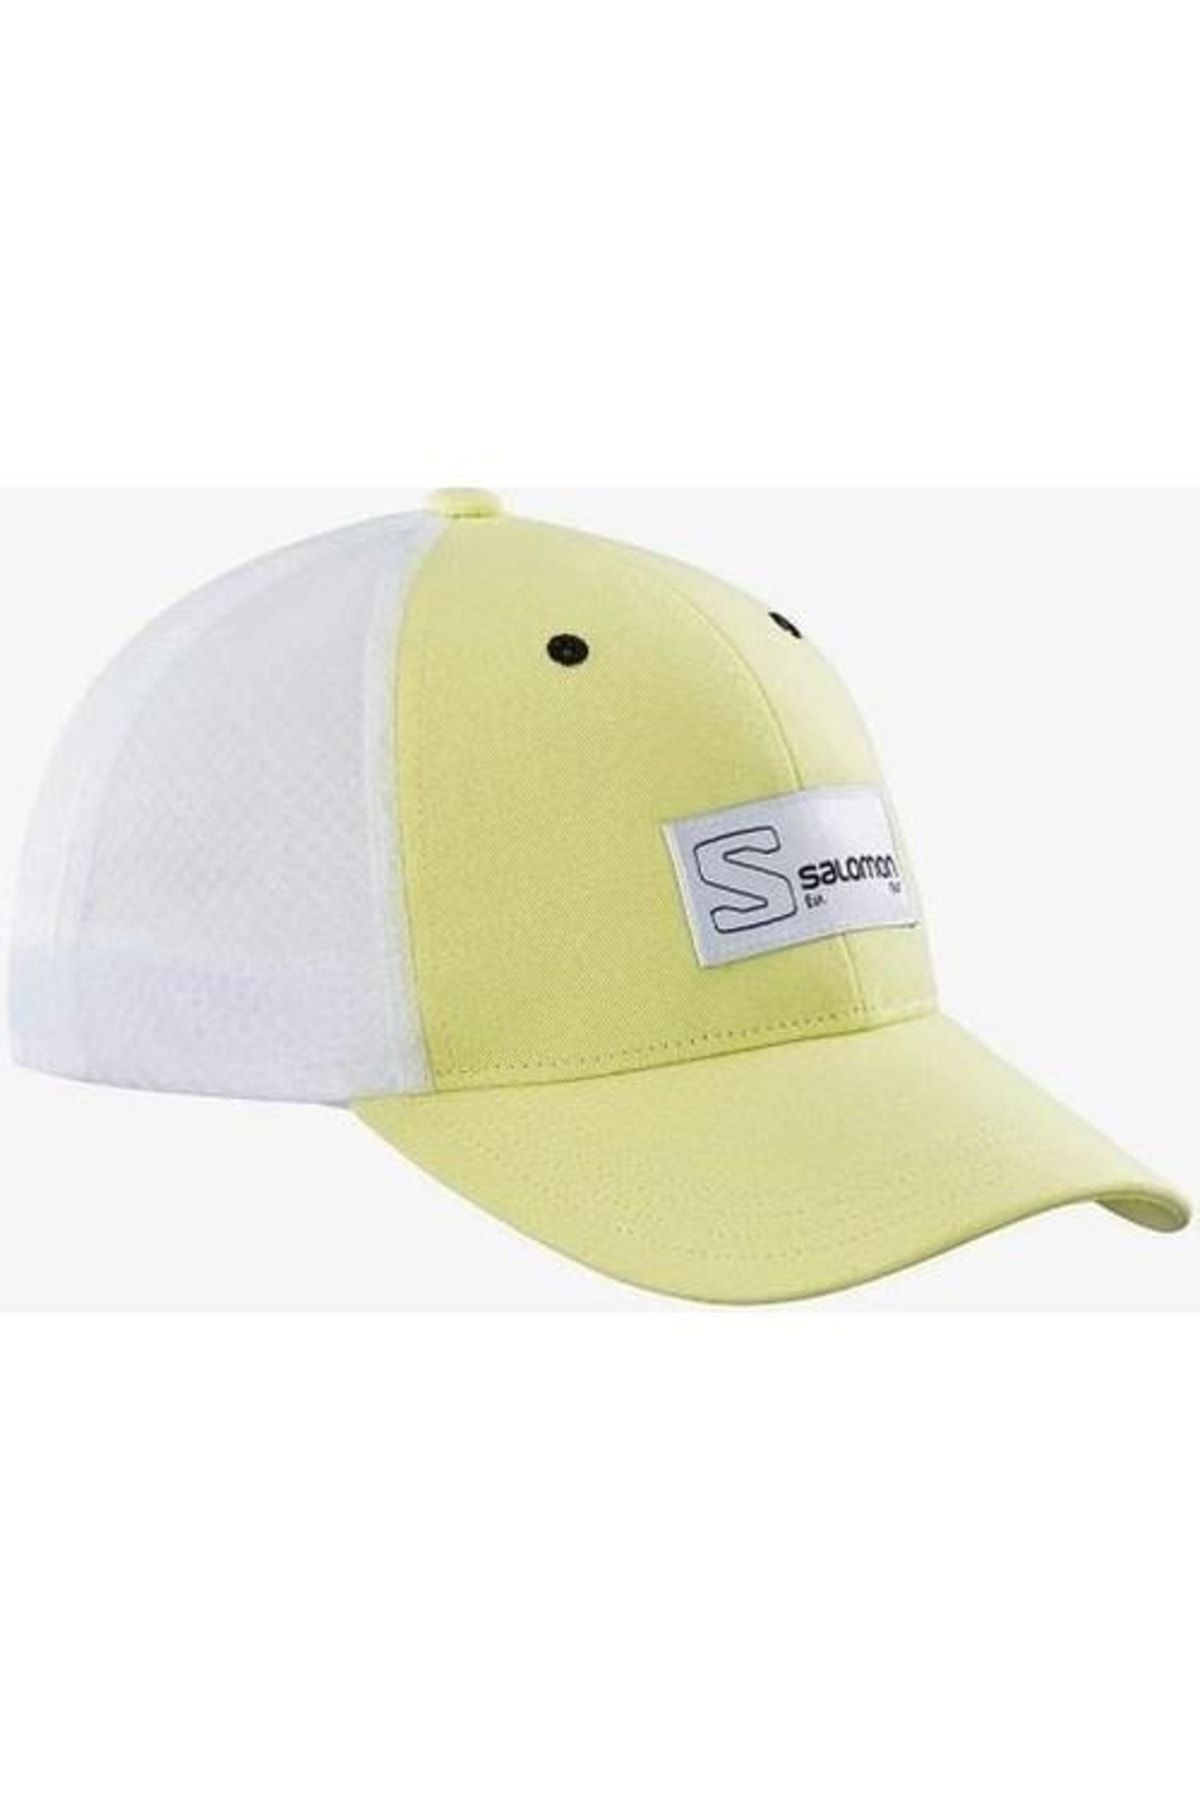 Salomon Trucker Curved Cap Unisex Beyaz Şapka Lc1681800-27037